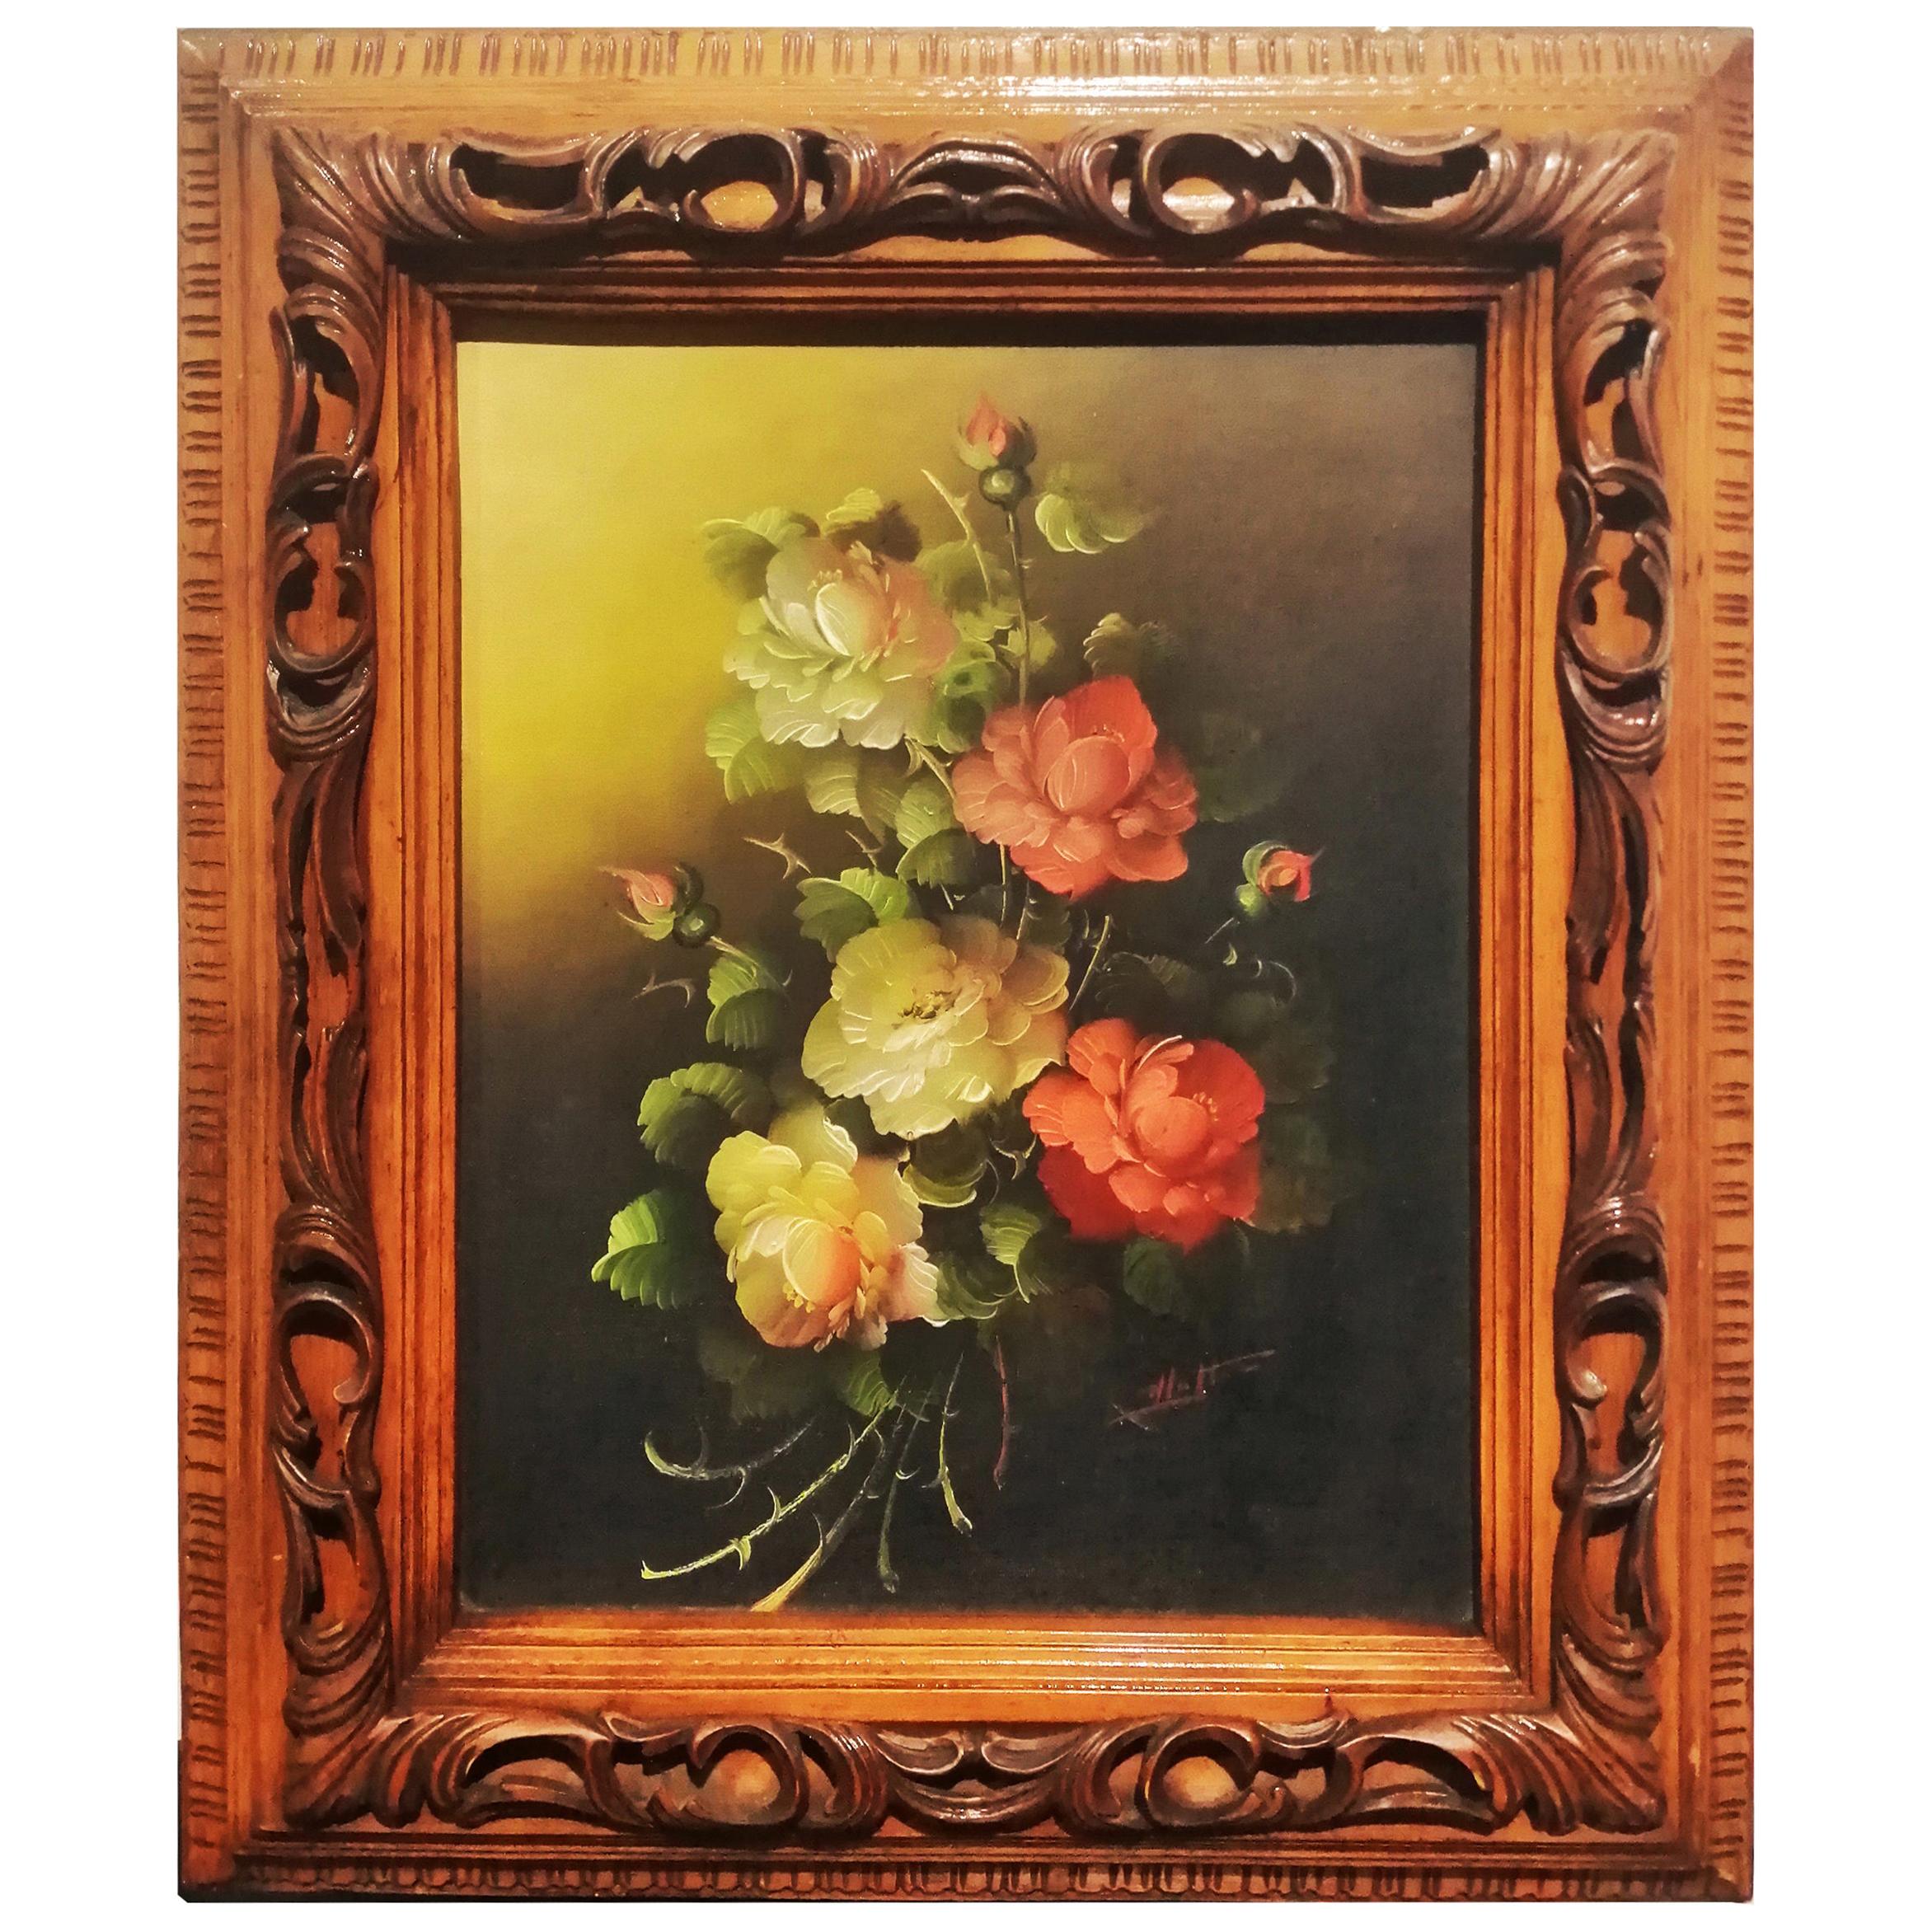 Dekoratives Gemälde aus der Mitte des Jahrhunderts mit Blumenstrauß, gemalt in Öl auf Holz